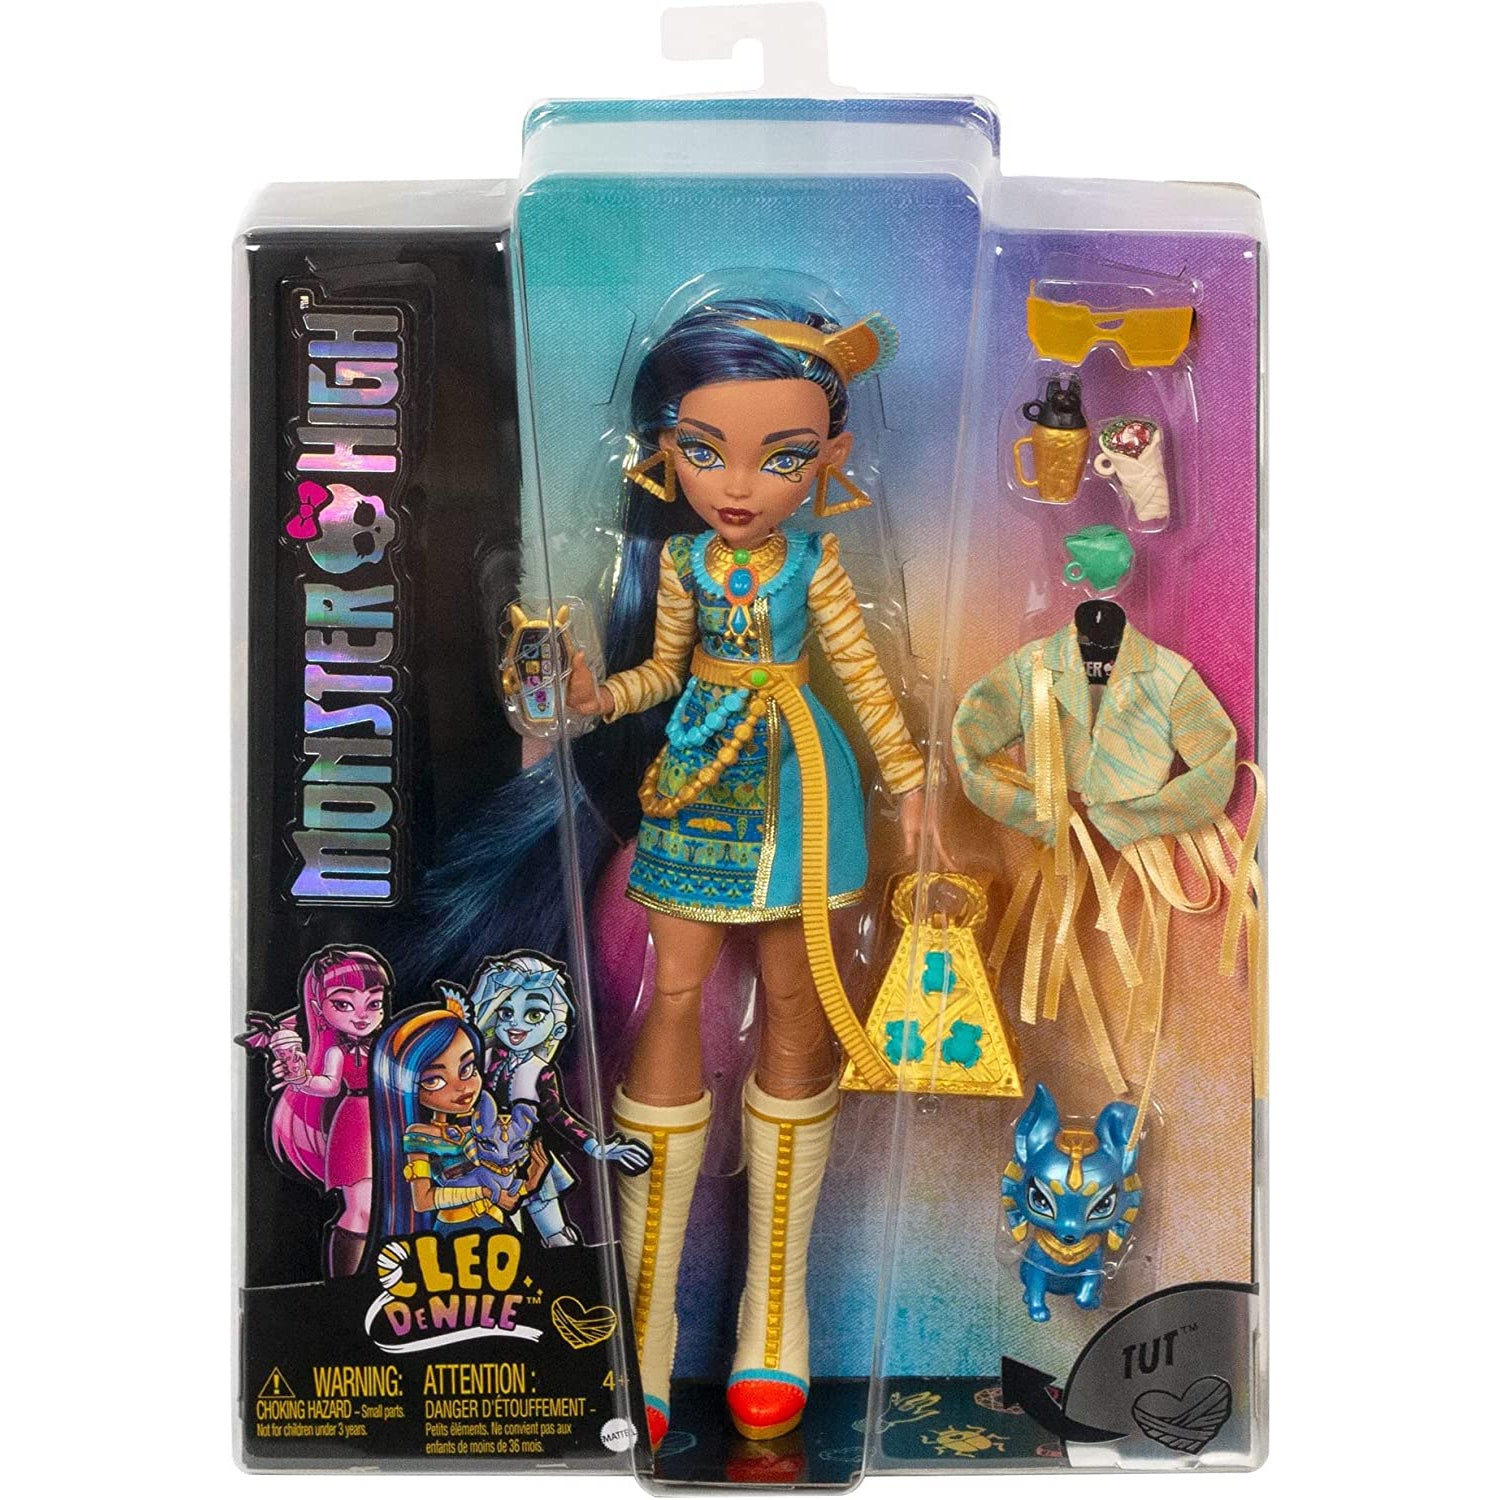 Monster High Dolls for sale in Kansas City, Missouri